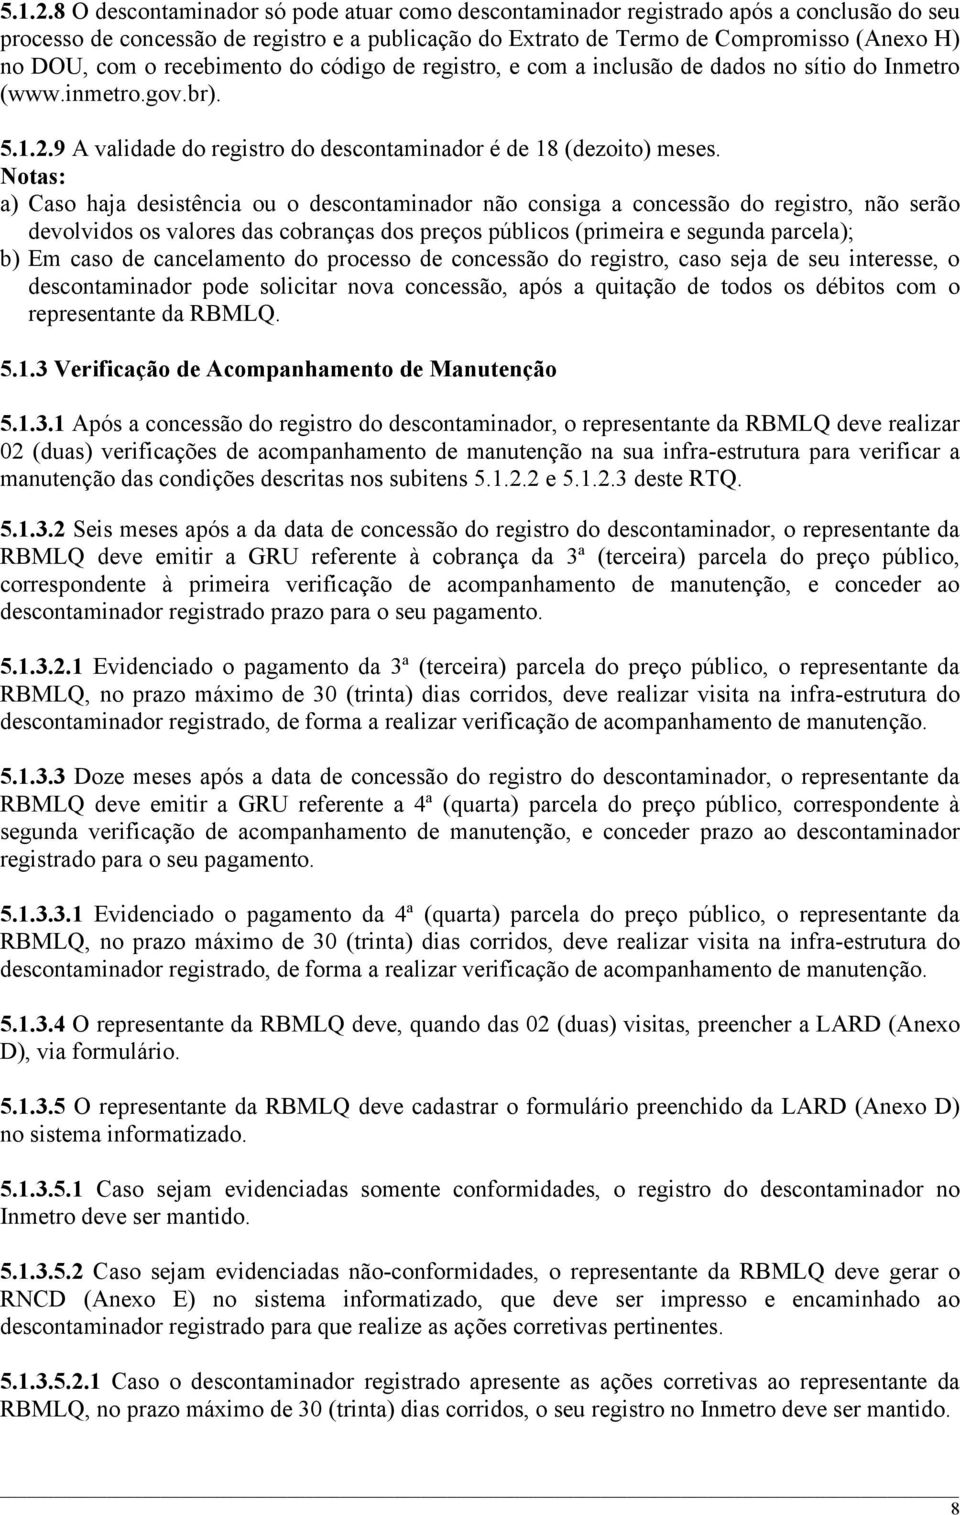 recebimento do código de registro, e com a inclusão de dados no sítio do Inmetro (www.inmetro.gov.br). 9 A validade do registro do descontaminador é de 18 (dezoito) meses.